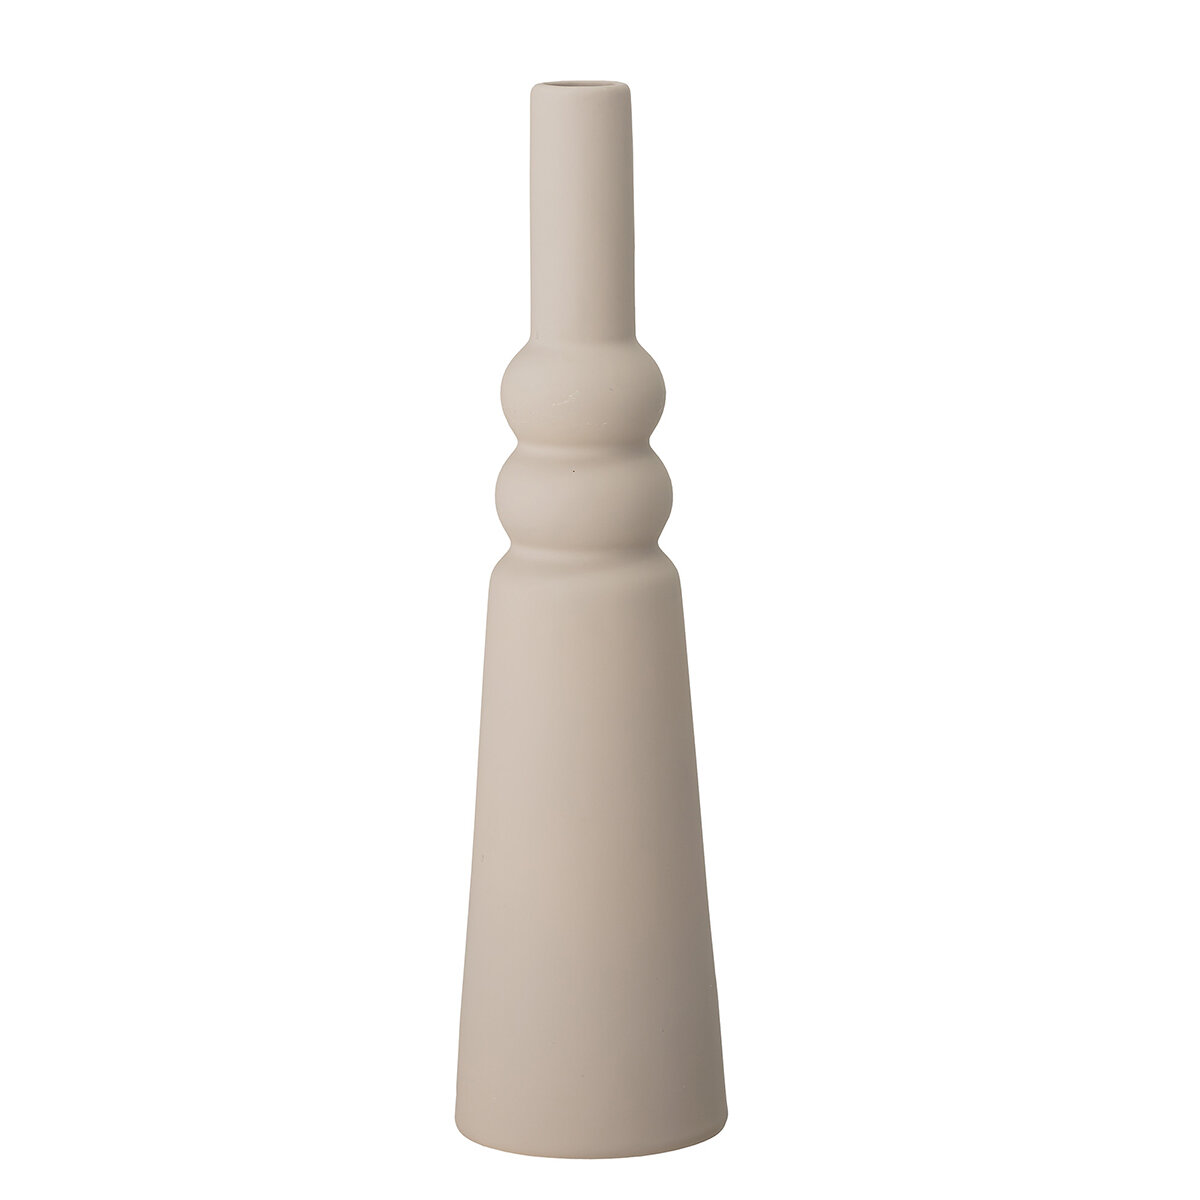 Isold - Large stoneware vase